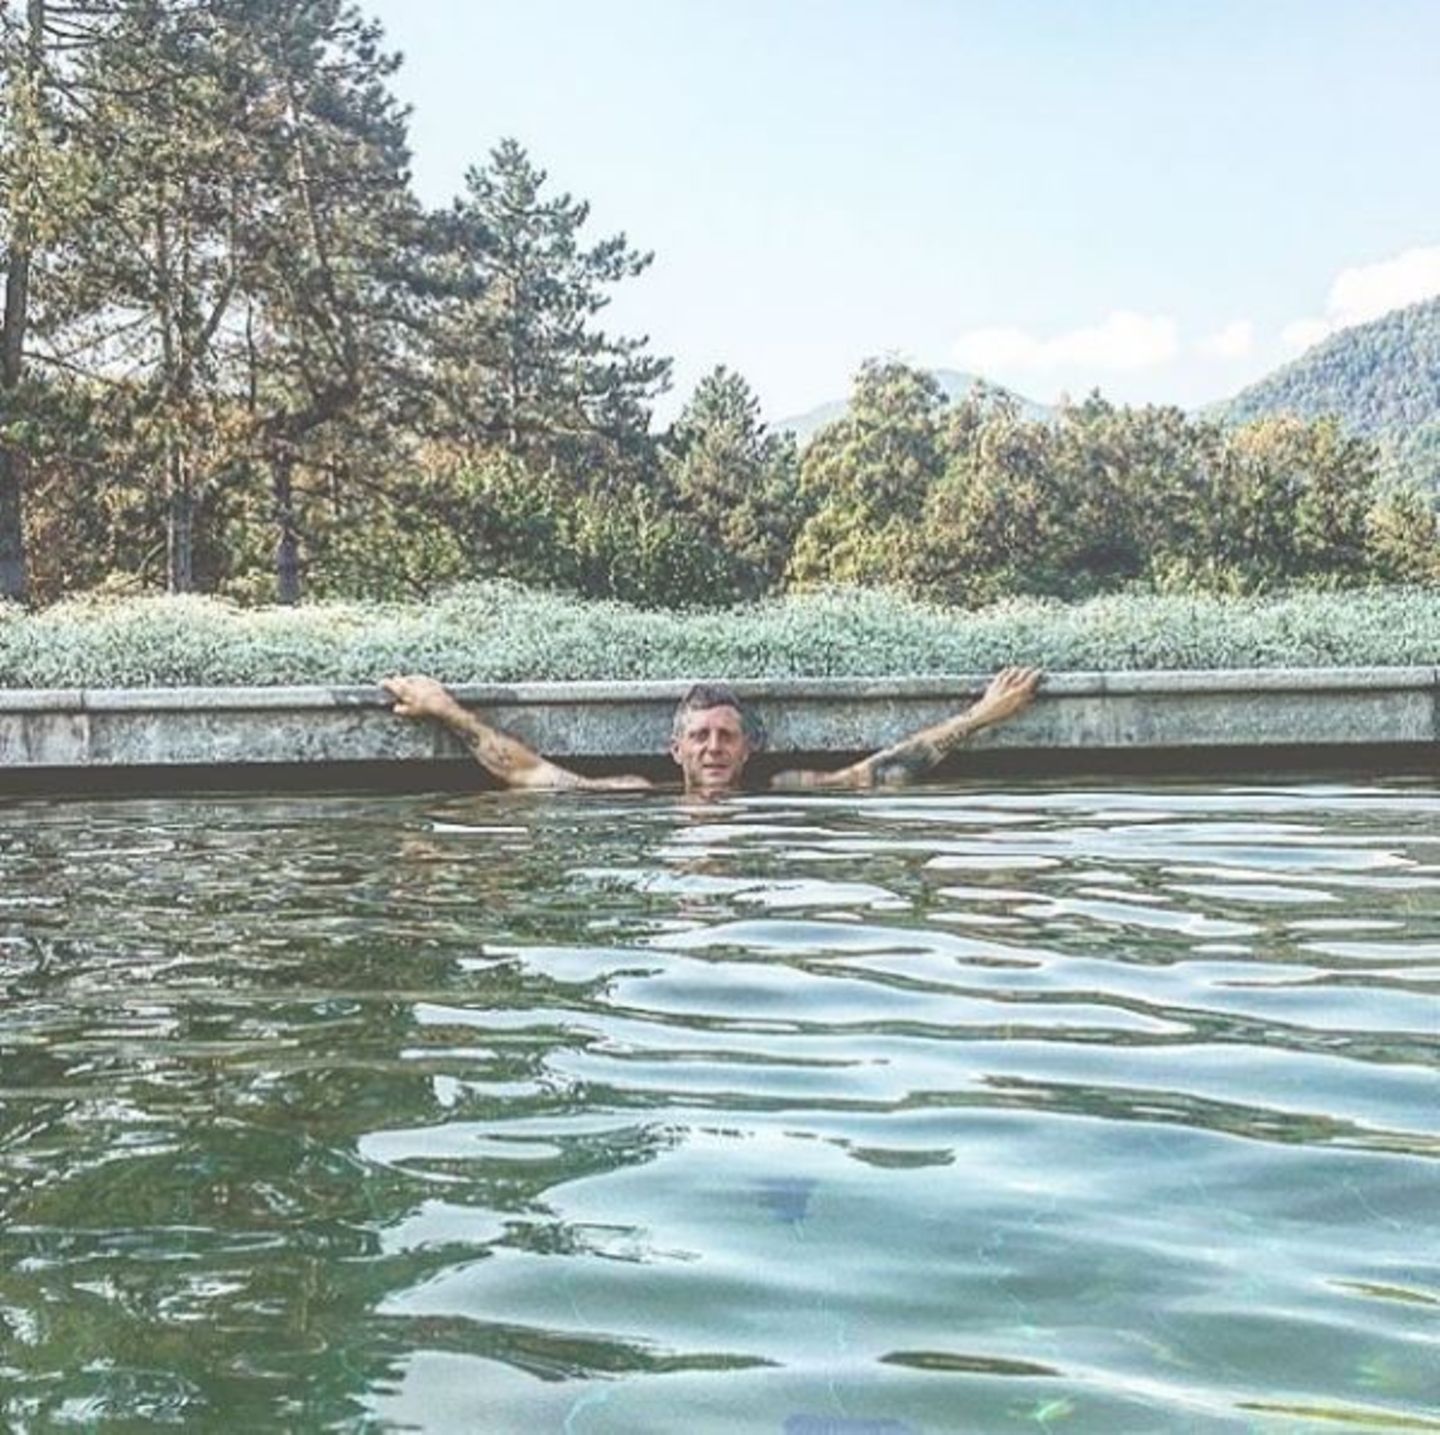 Für Lapo Elkann ist Schwimmen ein ganz besonders wertvoller Sport: Wie alles in seinem Leben muss auch der Pool vor Luxus nur so strotzen.